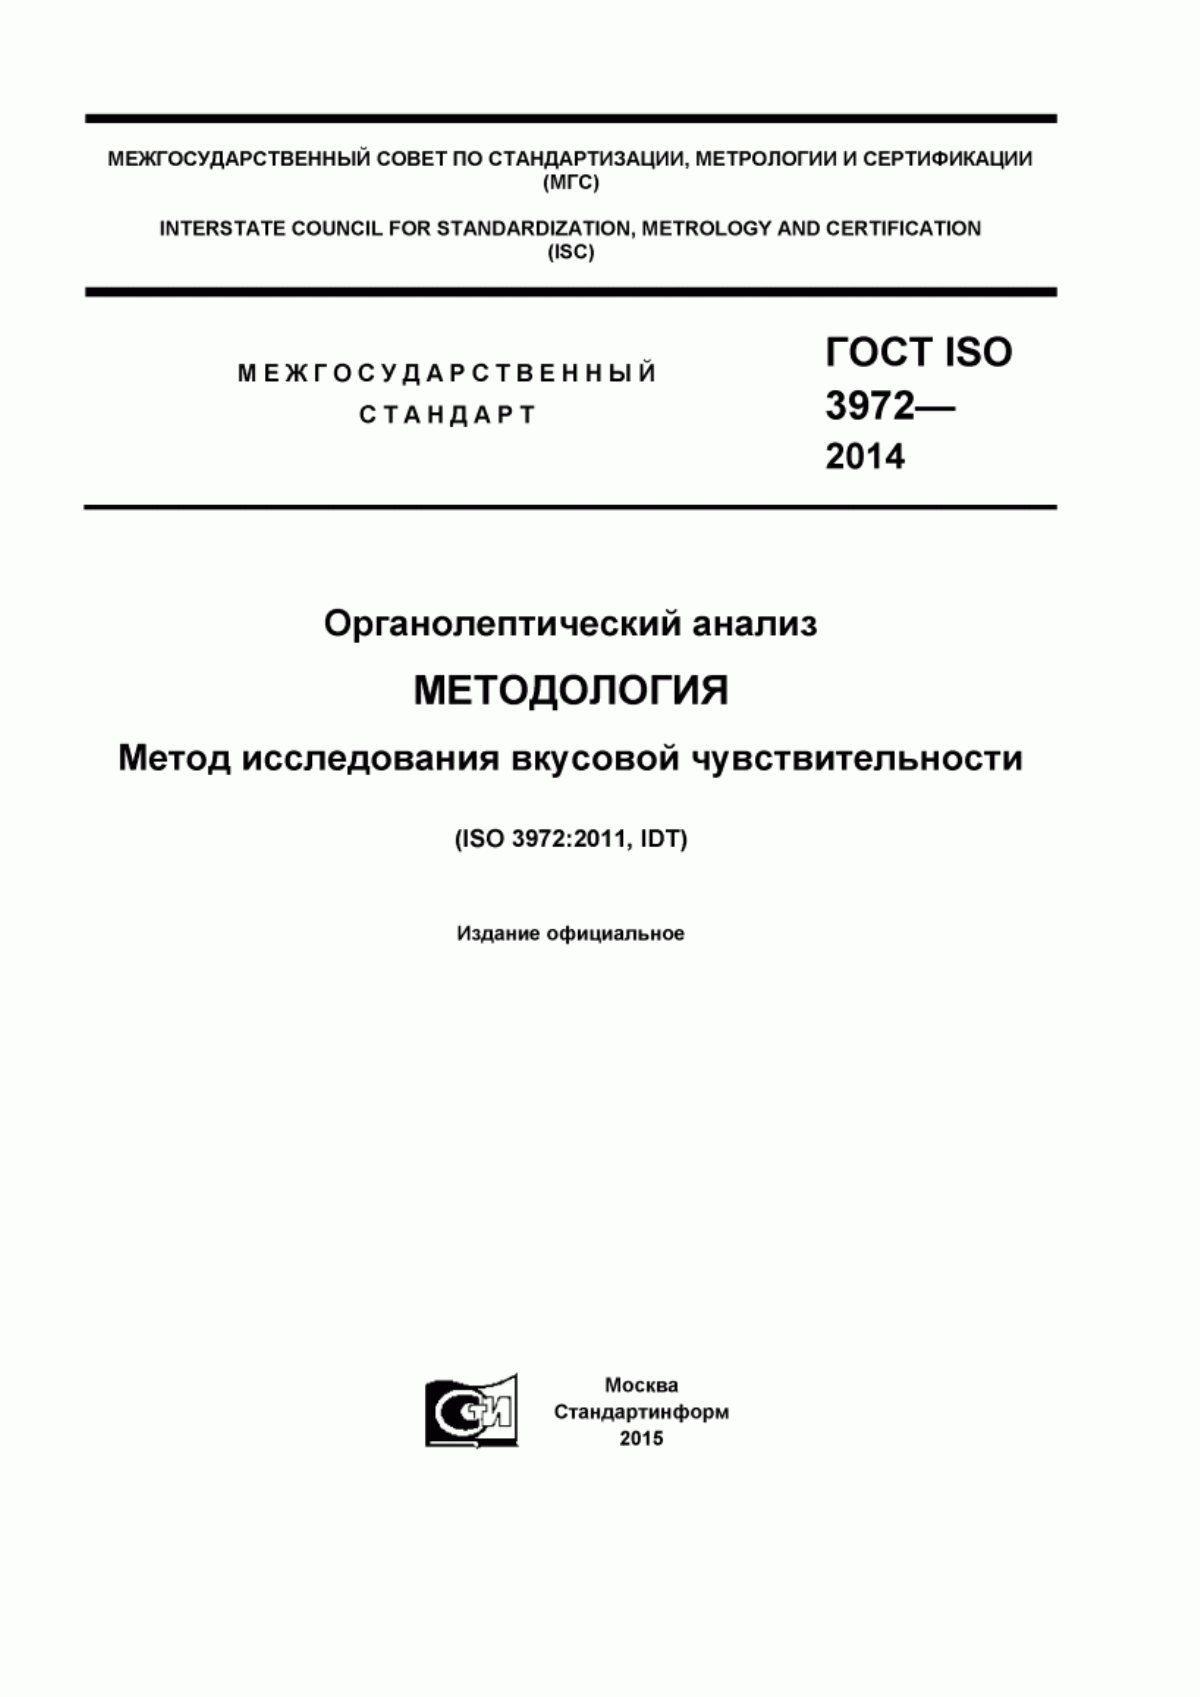 ГОСТ ISO 3972-2014 Органолептический анализ. Методология. Метод исследования вкусовой чувствительности